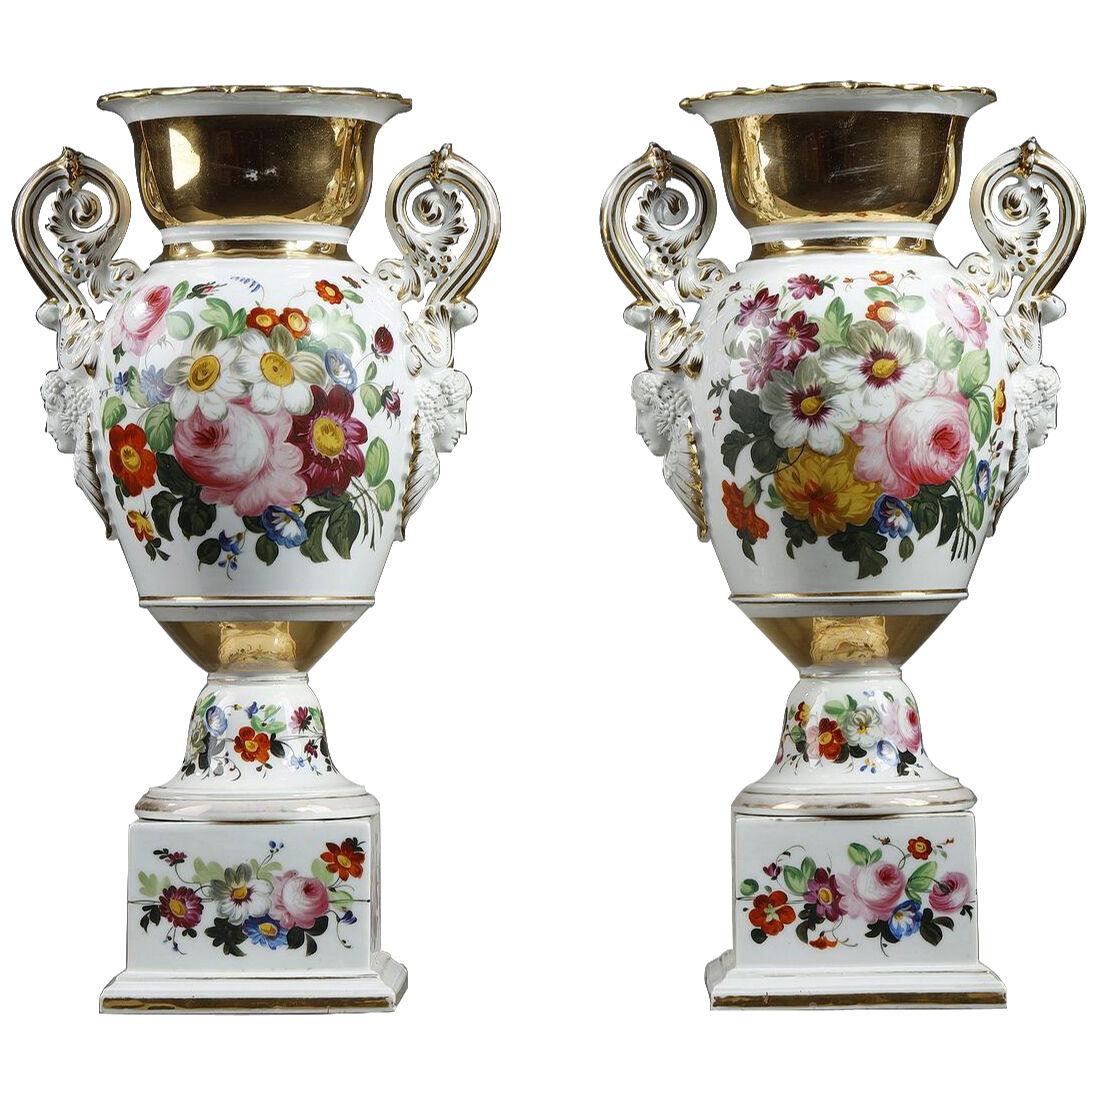 Pair of Paris porcelain vases with floral decoration